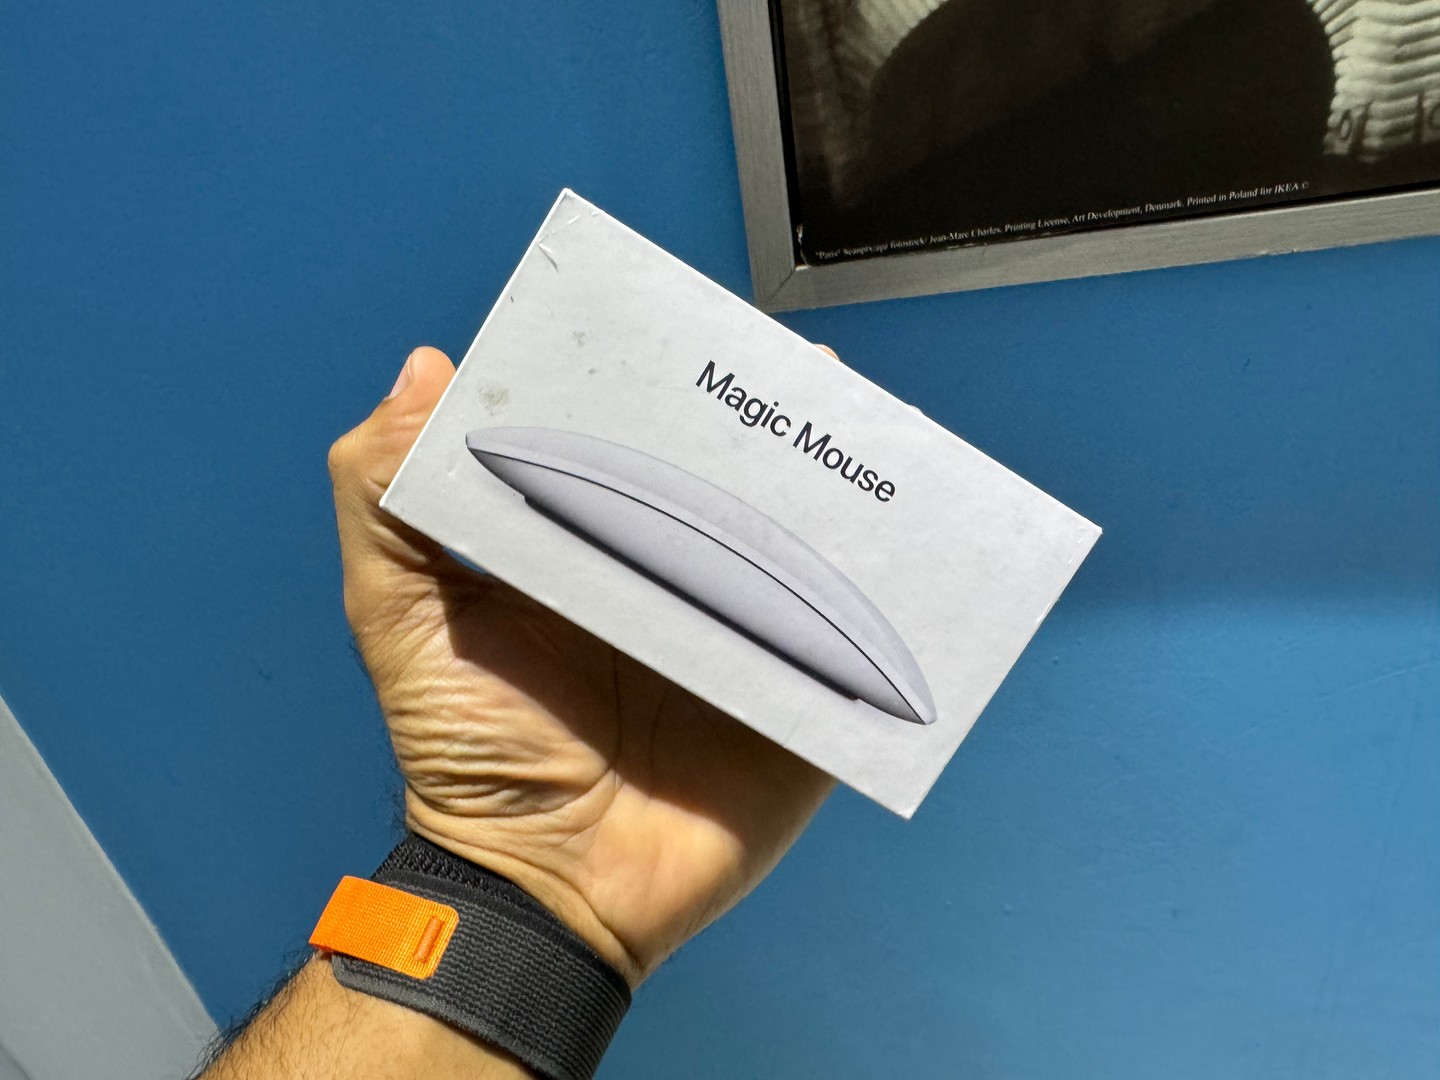 accesorios para electronica - Magic Mouse (2da Gen) Nuevos Sellados by Apple, Garantía, RD$ 6,500 NEG